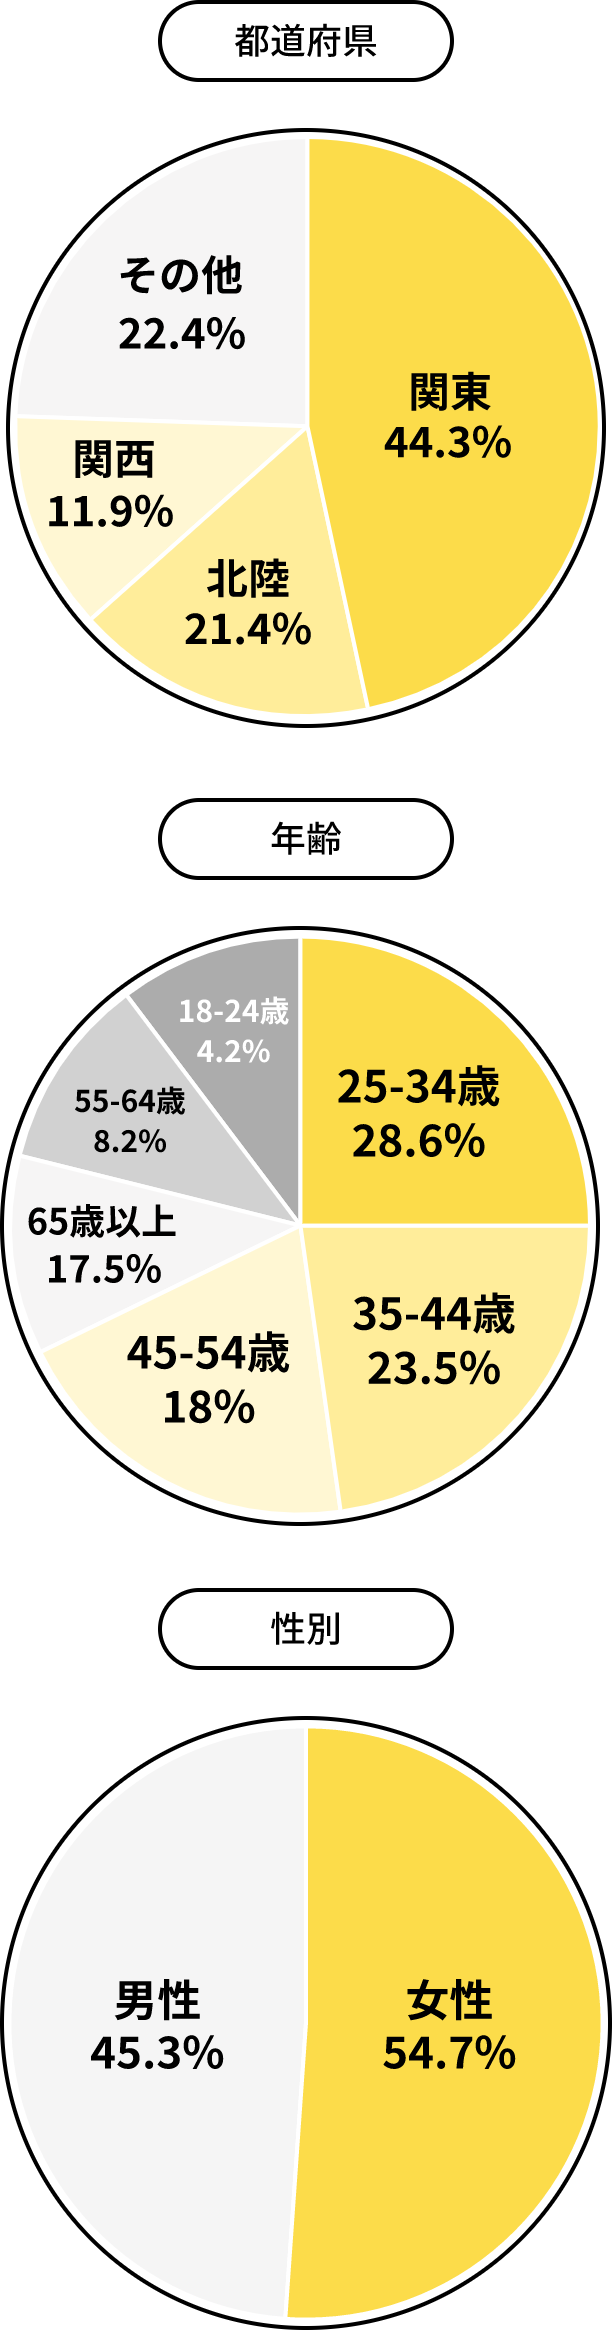 都道府県/年齢/性別のデータ